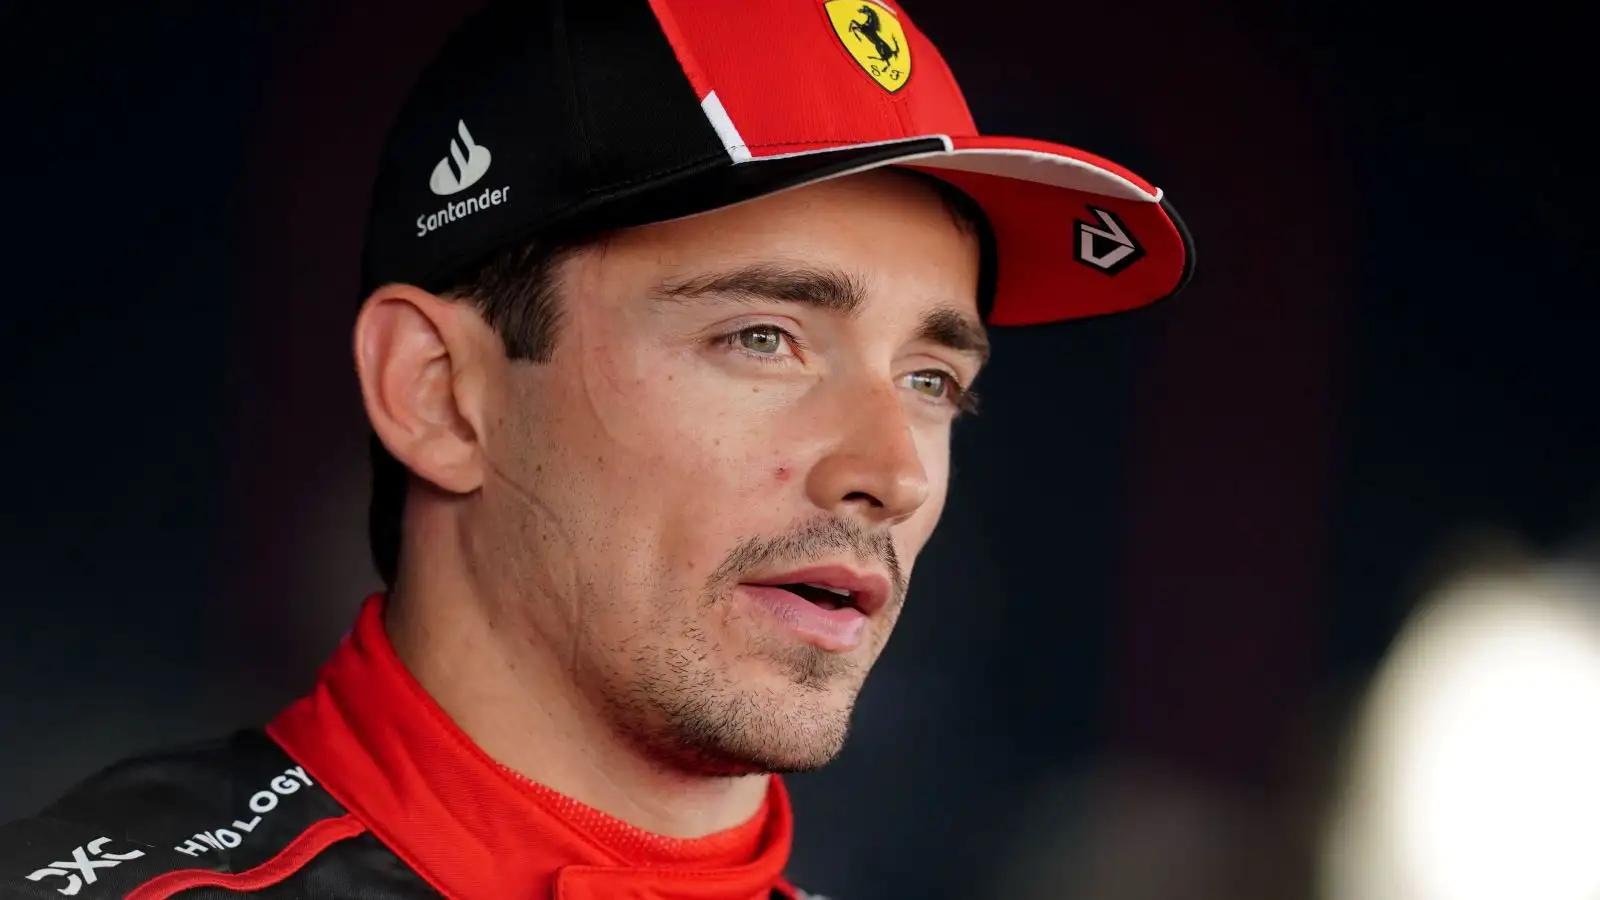 Charles Leclerc, Ferrari, speaks to media.